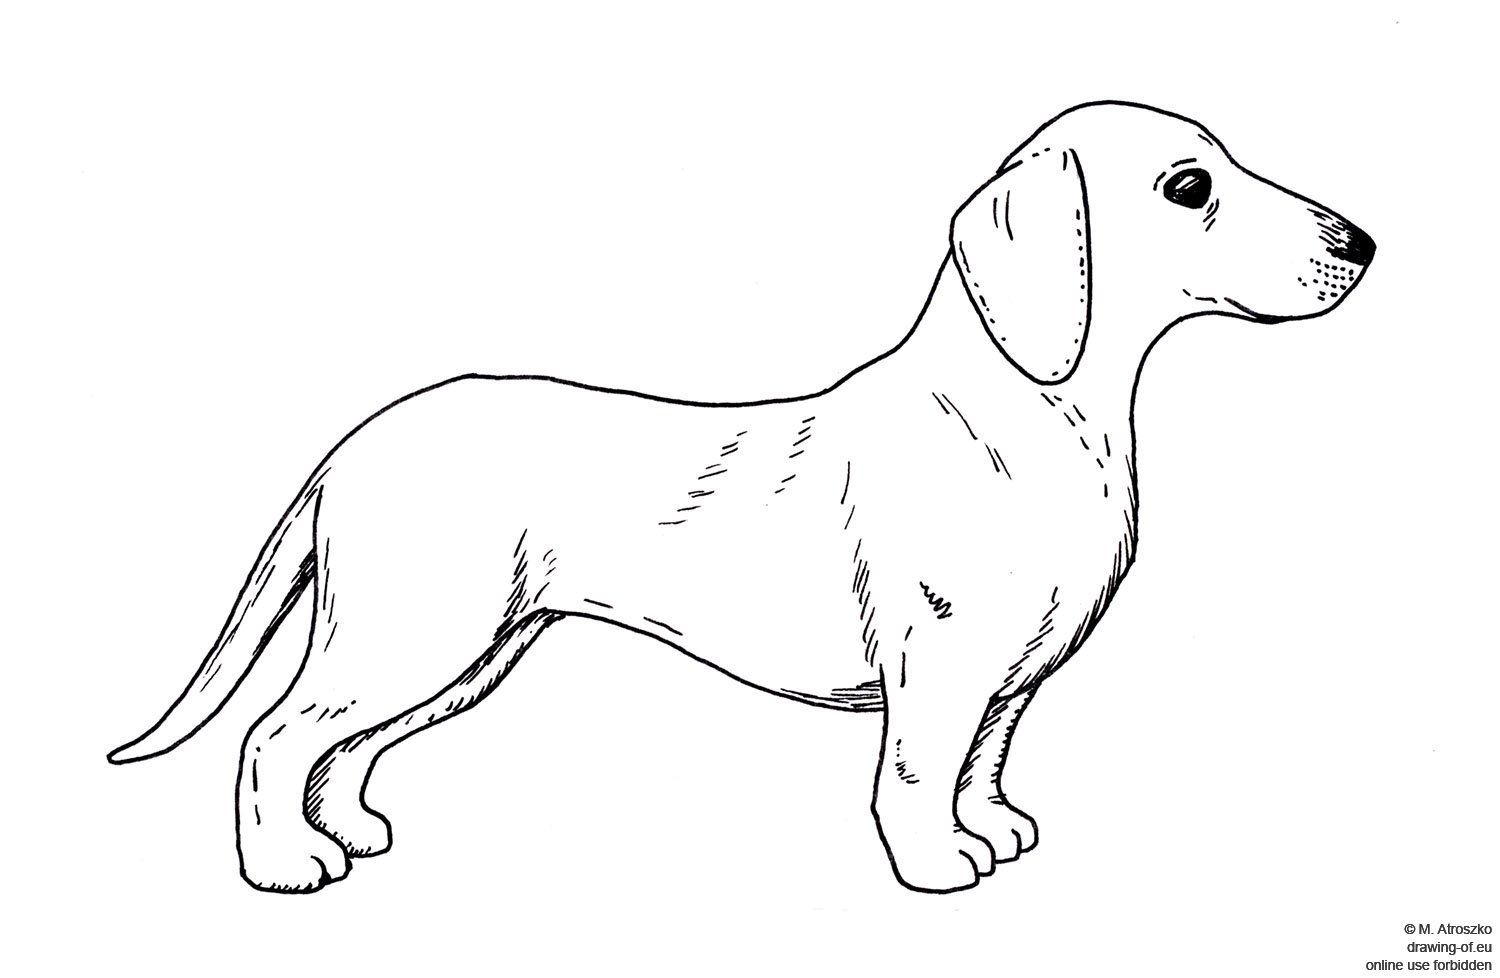 drawing of dachshund dog